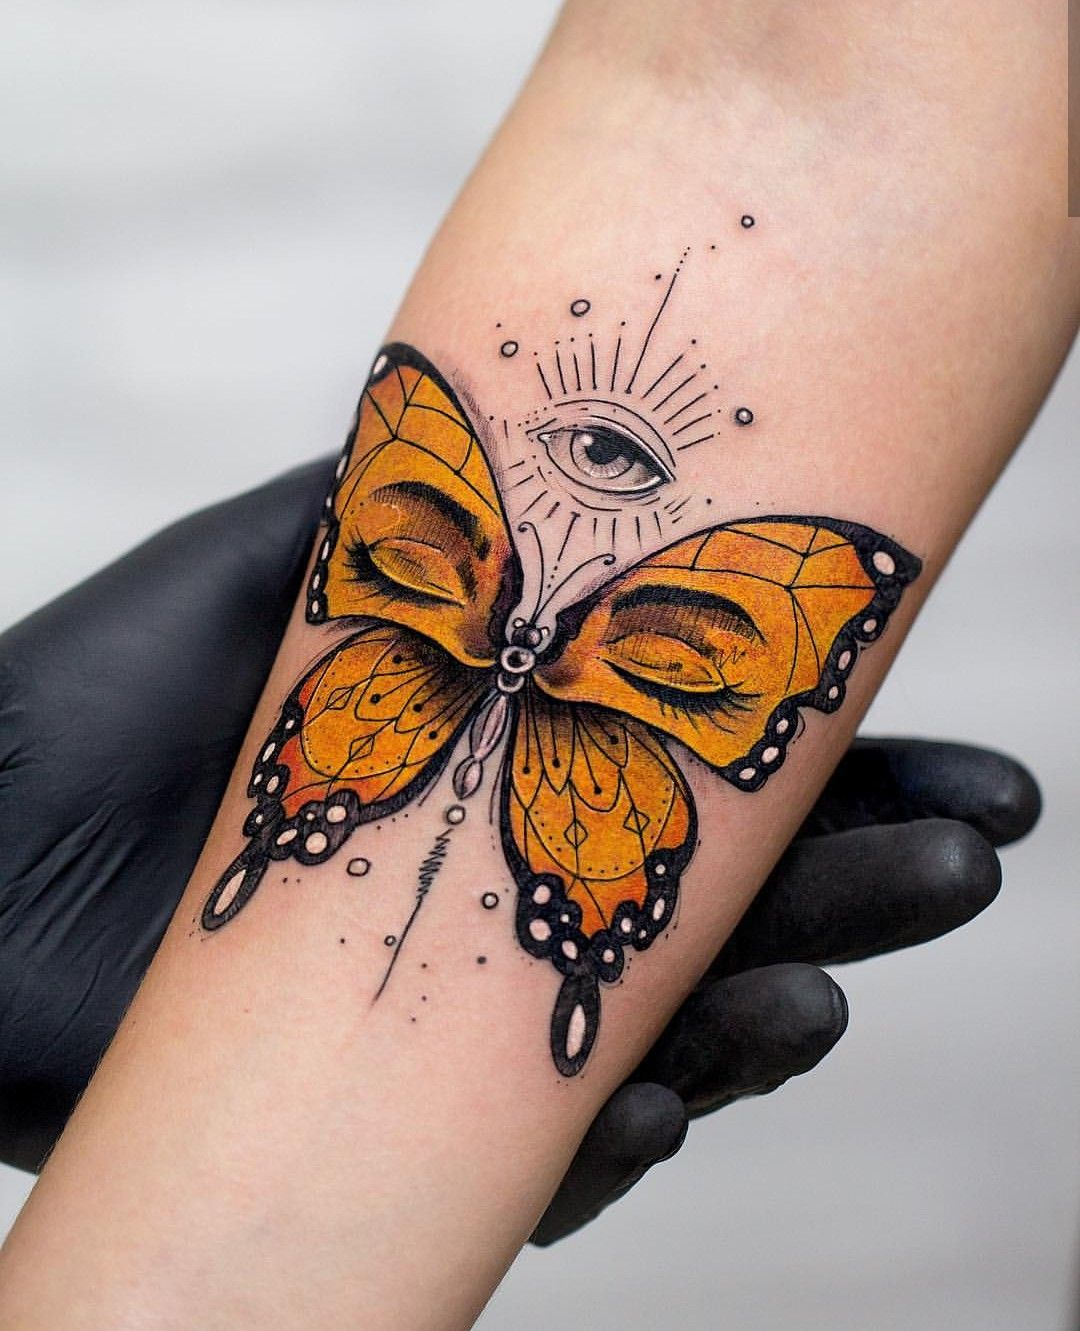 Tatuagem Borboleta Tattoo Butterfly Tattoos Primer Tatuaje with regard to measurements 1080 X 1331